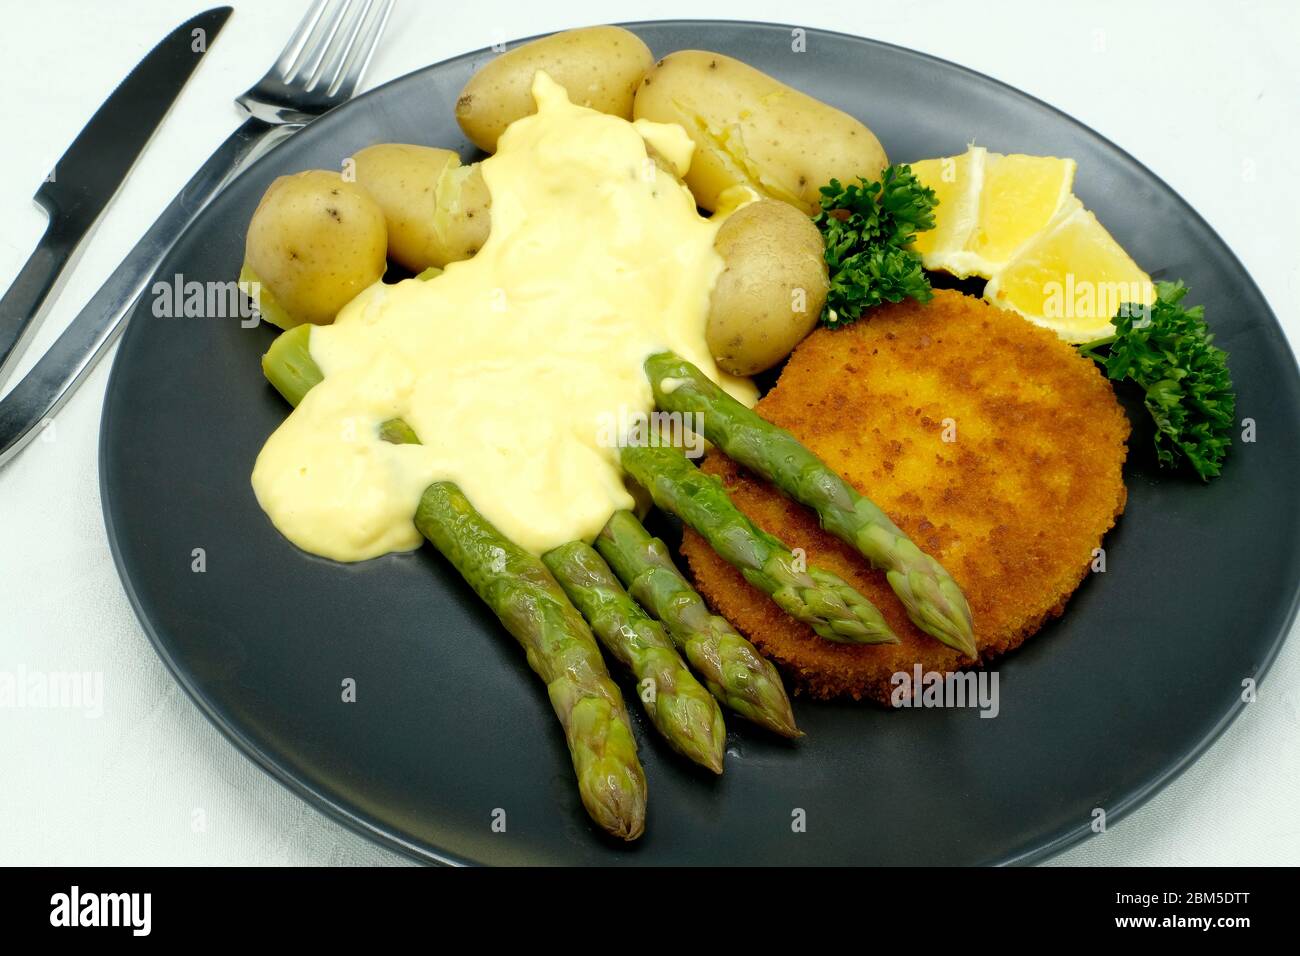 Spargel mit Schnitzel, neuen Kartoffeln und einer Sauce Hollandaise Stockfoto